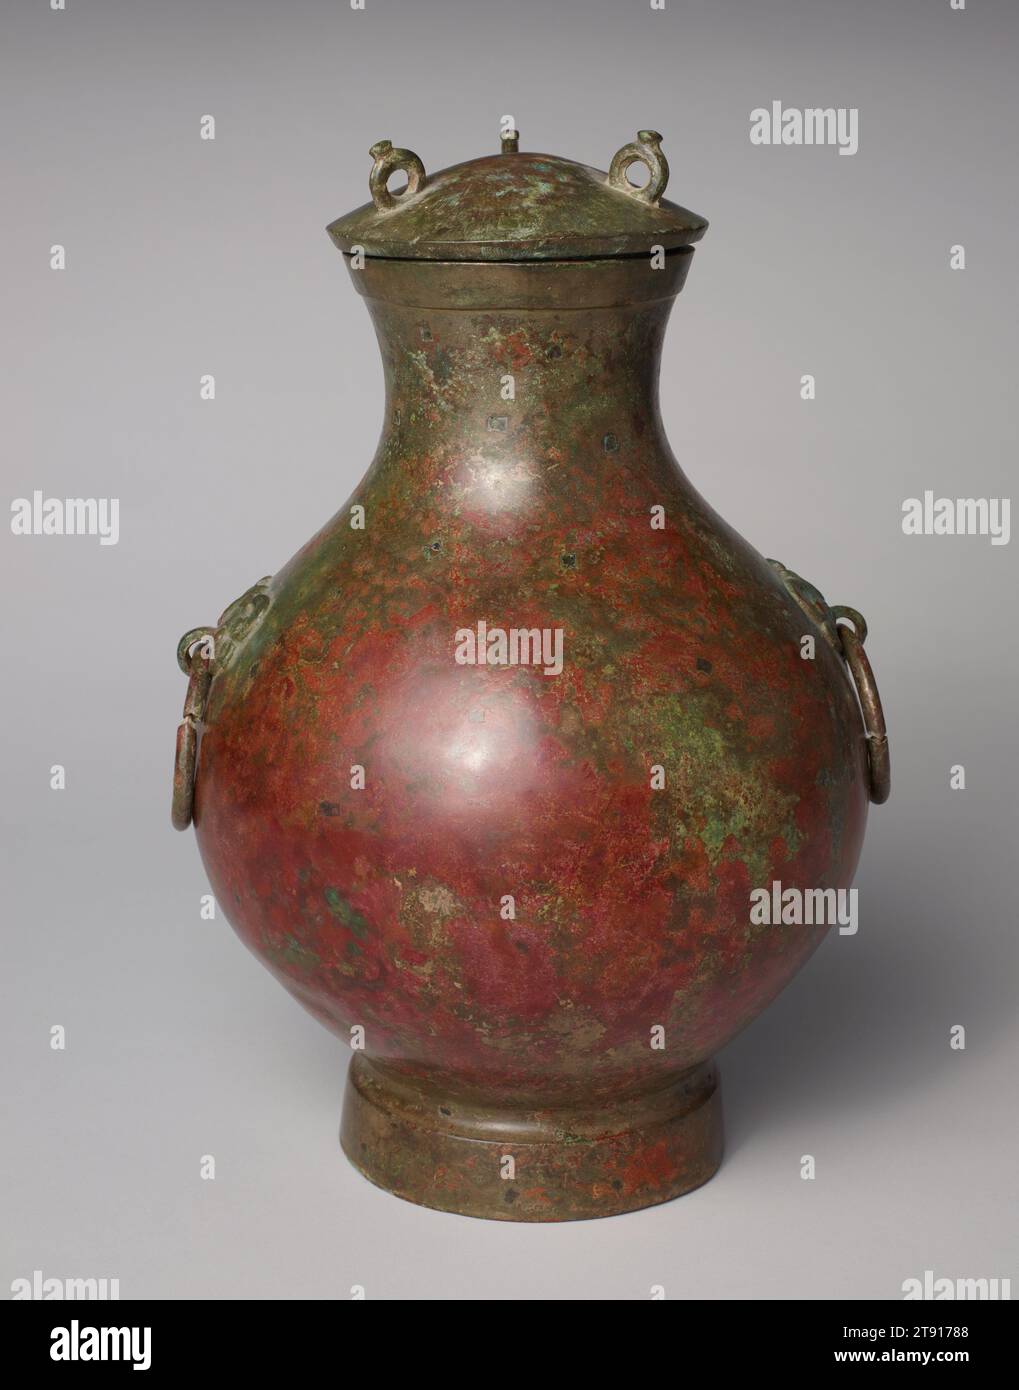 HU copriva navi, III secolo a.C., 13 7/8 x 8 7/8 pollici (35,2 x 22,54 cm), Bronzo, Cina, III secolo a.C., il vino hu o vaso d'acqua si è evoluto dalla tarda Shang (1300–1046 a.C. circa) alle dinastie Han (206 a.C.–220 d.C.) e ha assunto una grande varietà di forme. Durante il periodo degli Stati combattenti, questo tipo di hu rotondo, con la sua pancia rigonfiata, il collo alto e il piede rigato, divenne uno dei vasi di bronzo più popolari. In linea con il gusto contemporaneo, era relativamente non decorato, a volte con l'eccezione di diverse corde di fiocco rialzate, o bande piatte, che circondano il corpo. La maggior parte di essi dispone di maniglie ad anello Foto Stock